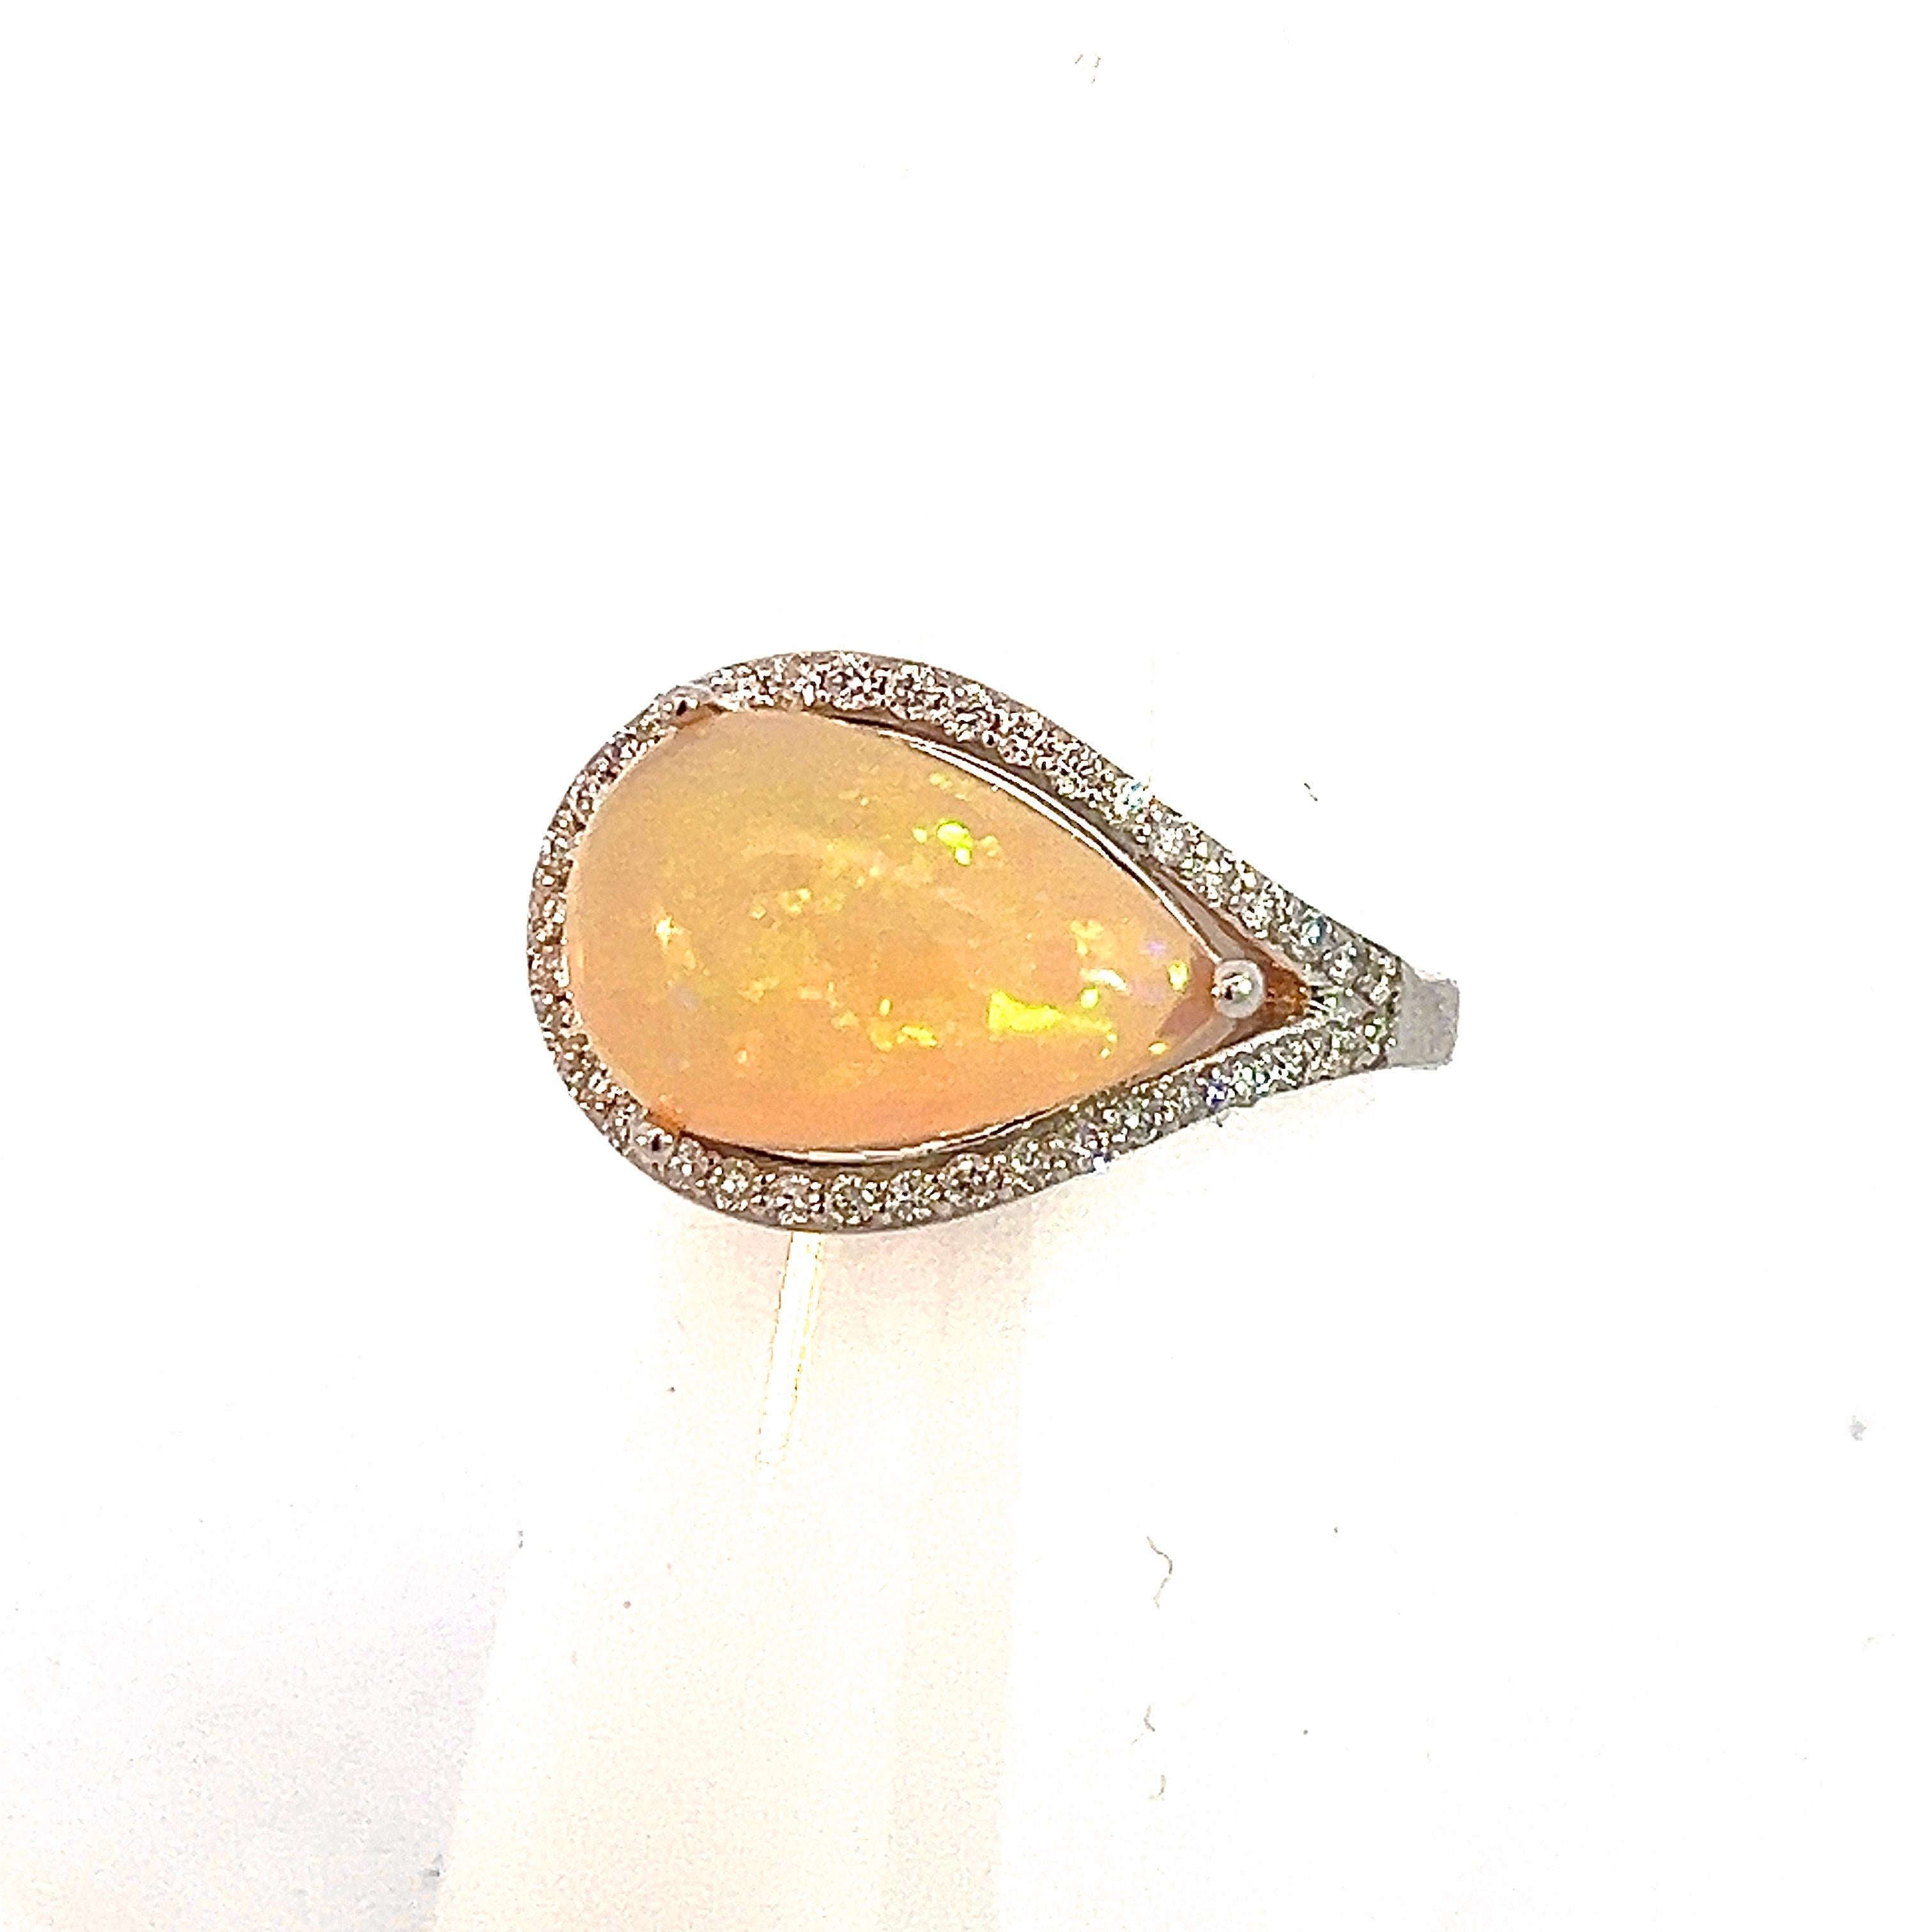 Natürliche feine Qualität Opal Diamant Ring 6,75 14k W Gold 4 TCW zertifiziert $4.950 310548

Dies ist ein einzigartiges, maßgeschneidertes, glamouröses Schmuckstück!

Nichts sagt mehr 